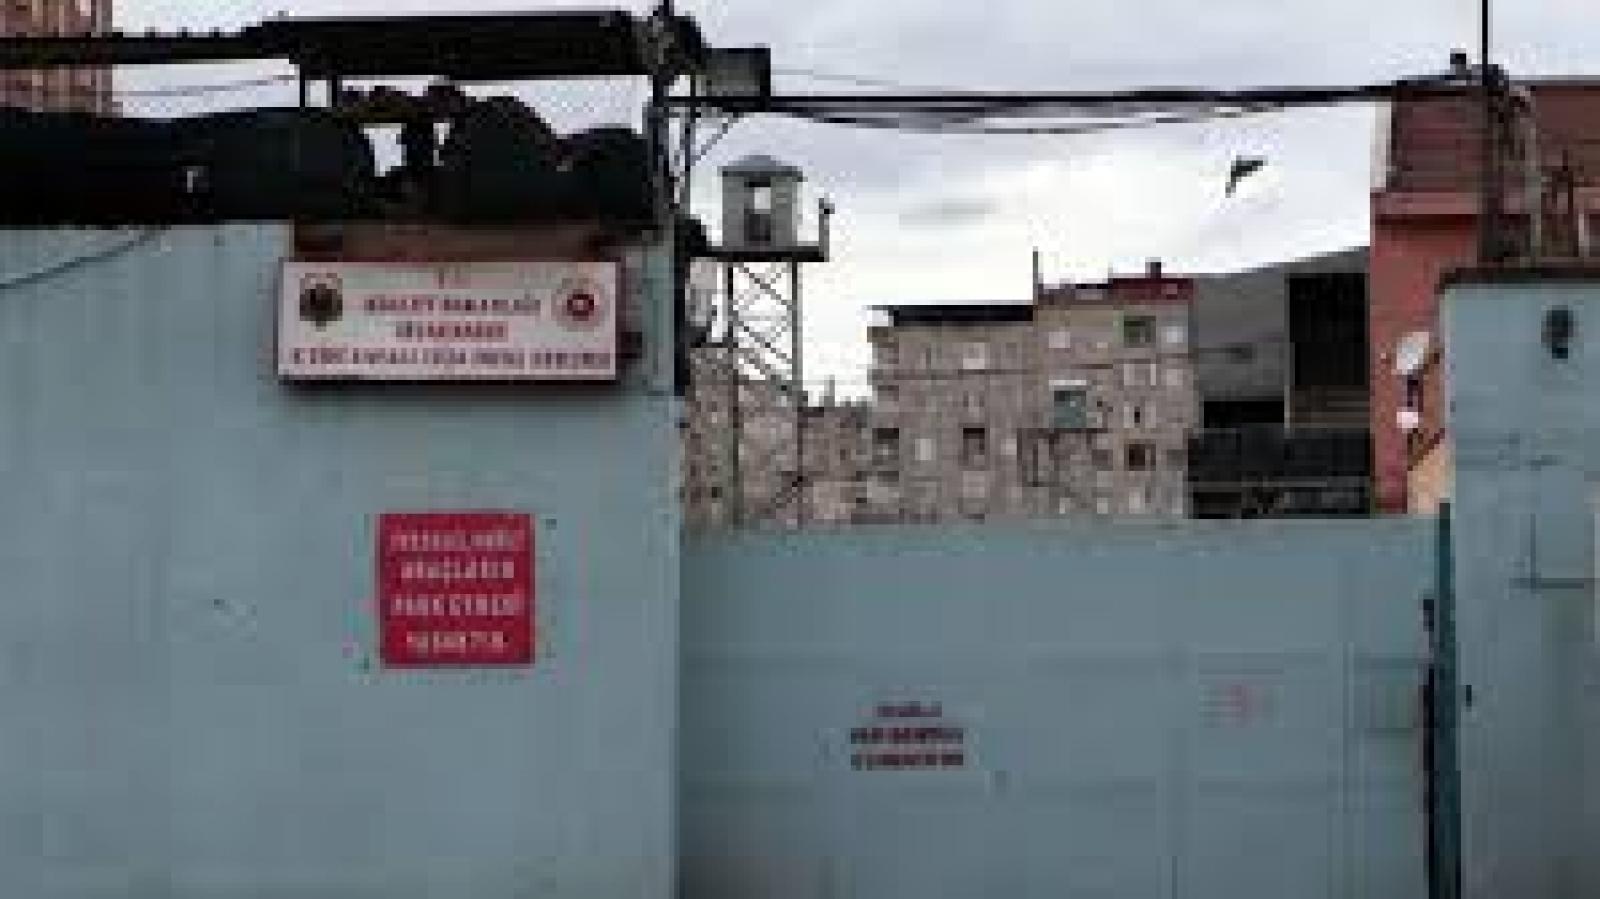 Diyarbakir Prison’s picture, 2000s, Diyarbakır